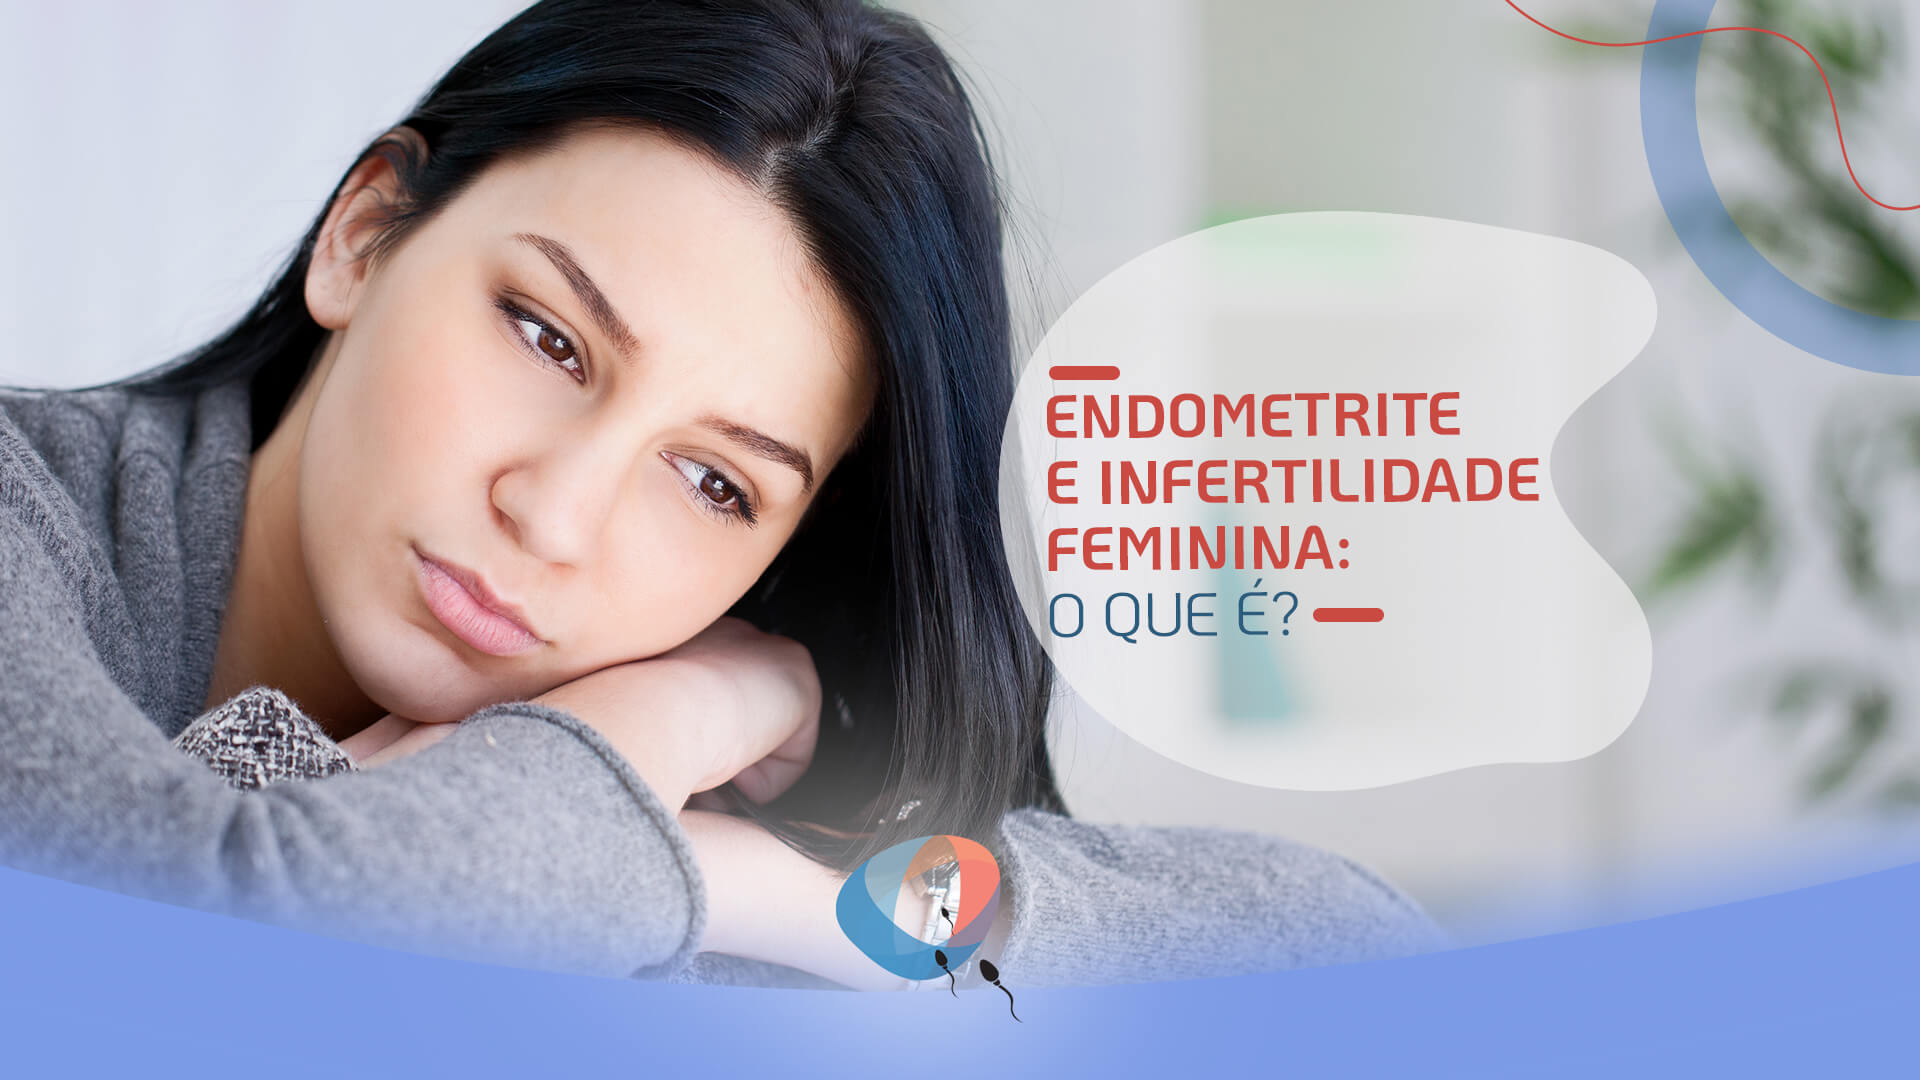 Endometrite e infertilidade feminina: qual a relação